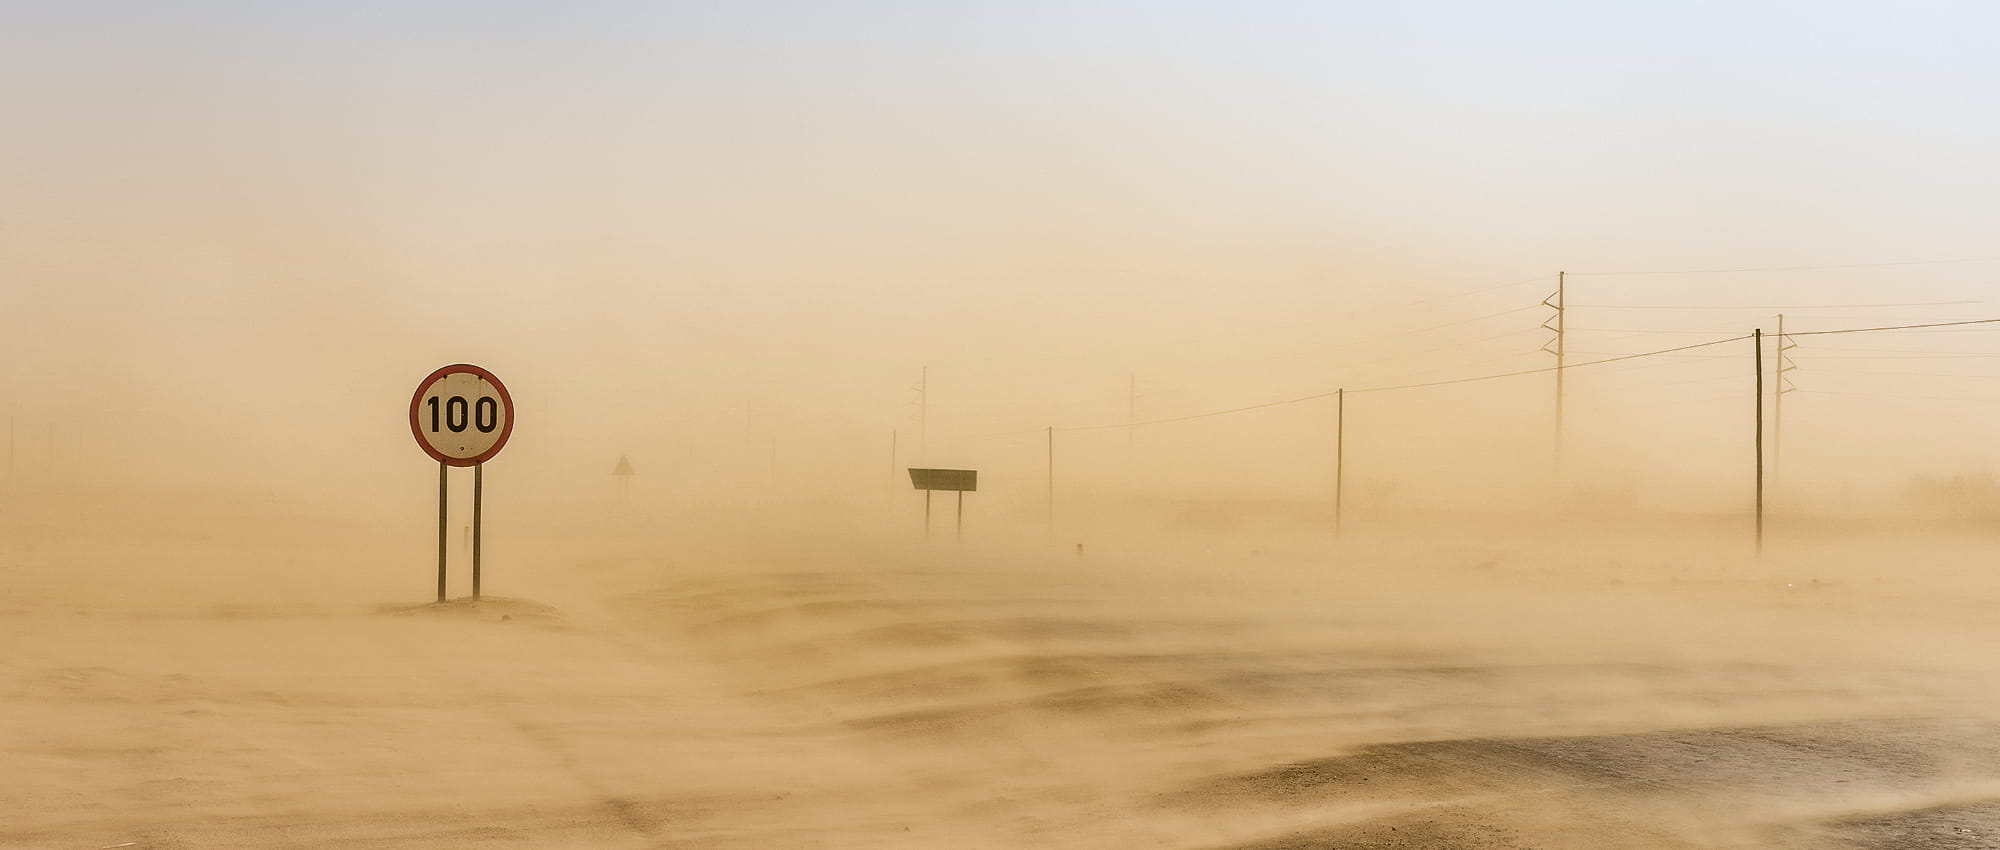 Die Wüste in Namibia. Copyright: Shutterstock/maramade   